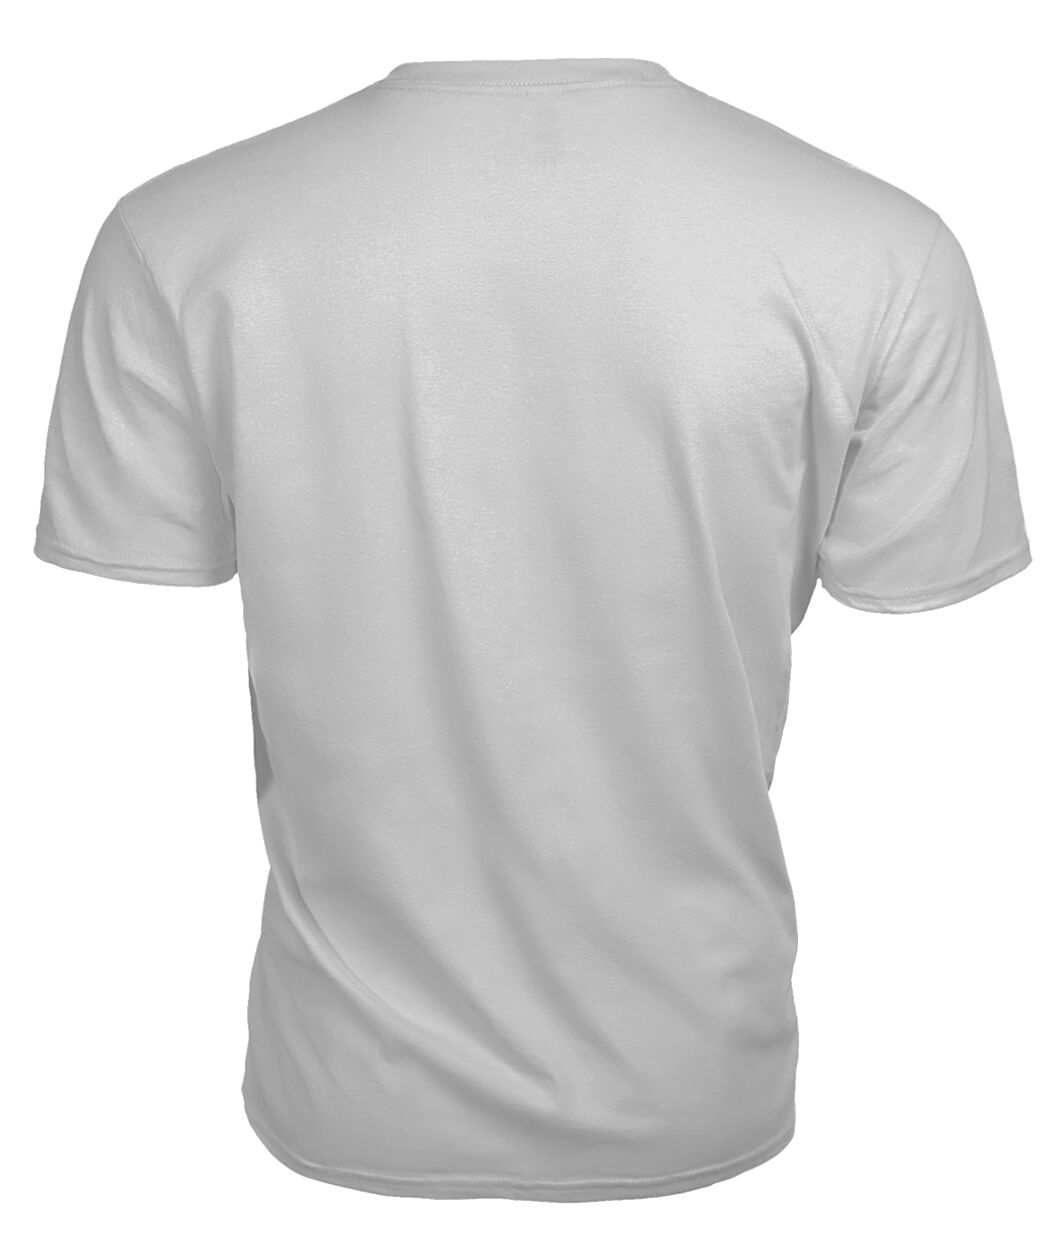 Sneddon Tartan 2D T-Shirt